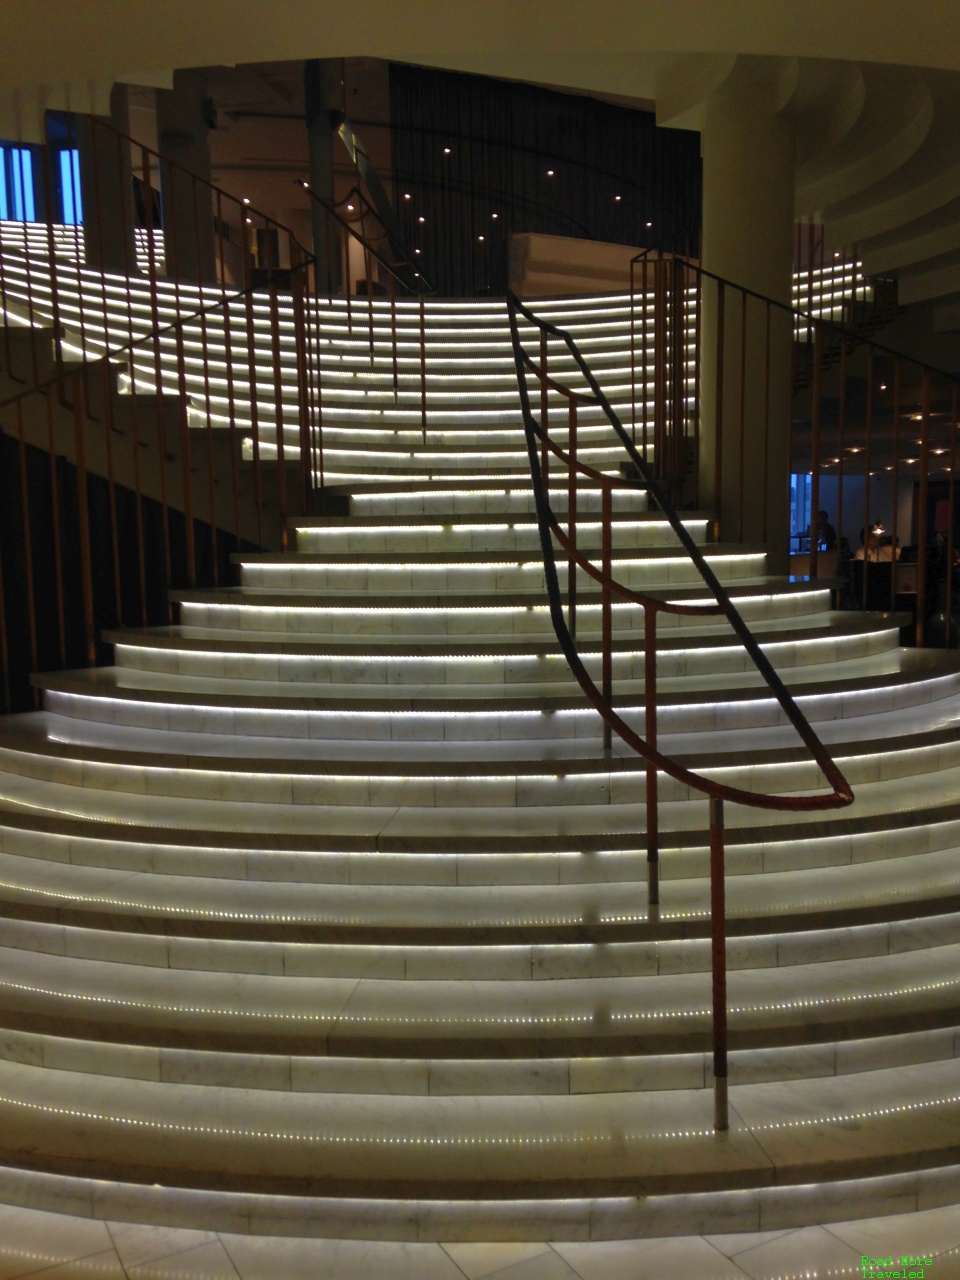 Hilton Stockholm Slussen - staircase to lobby